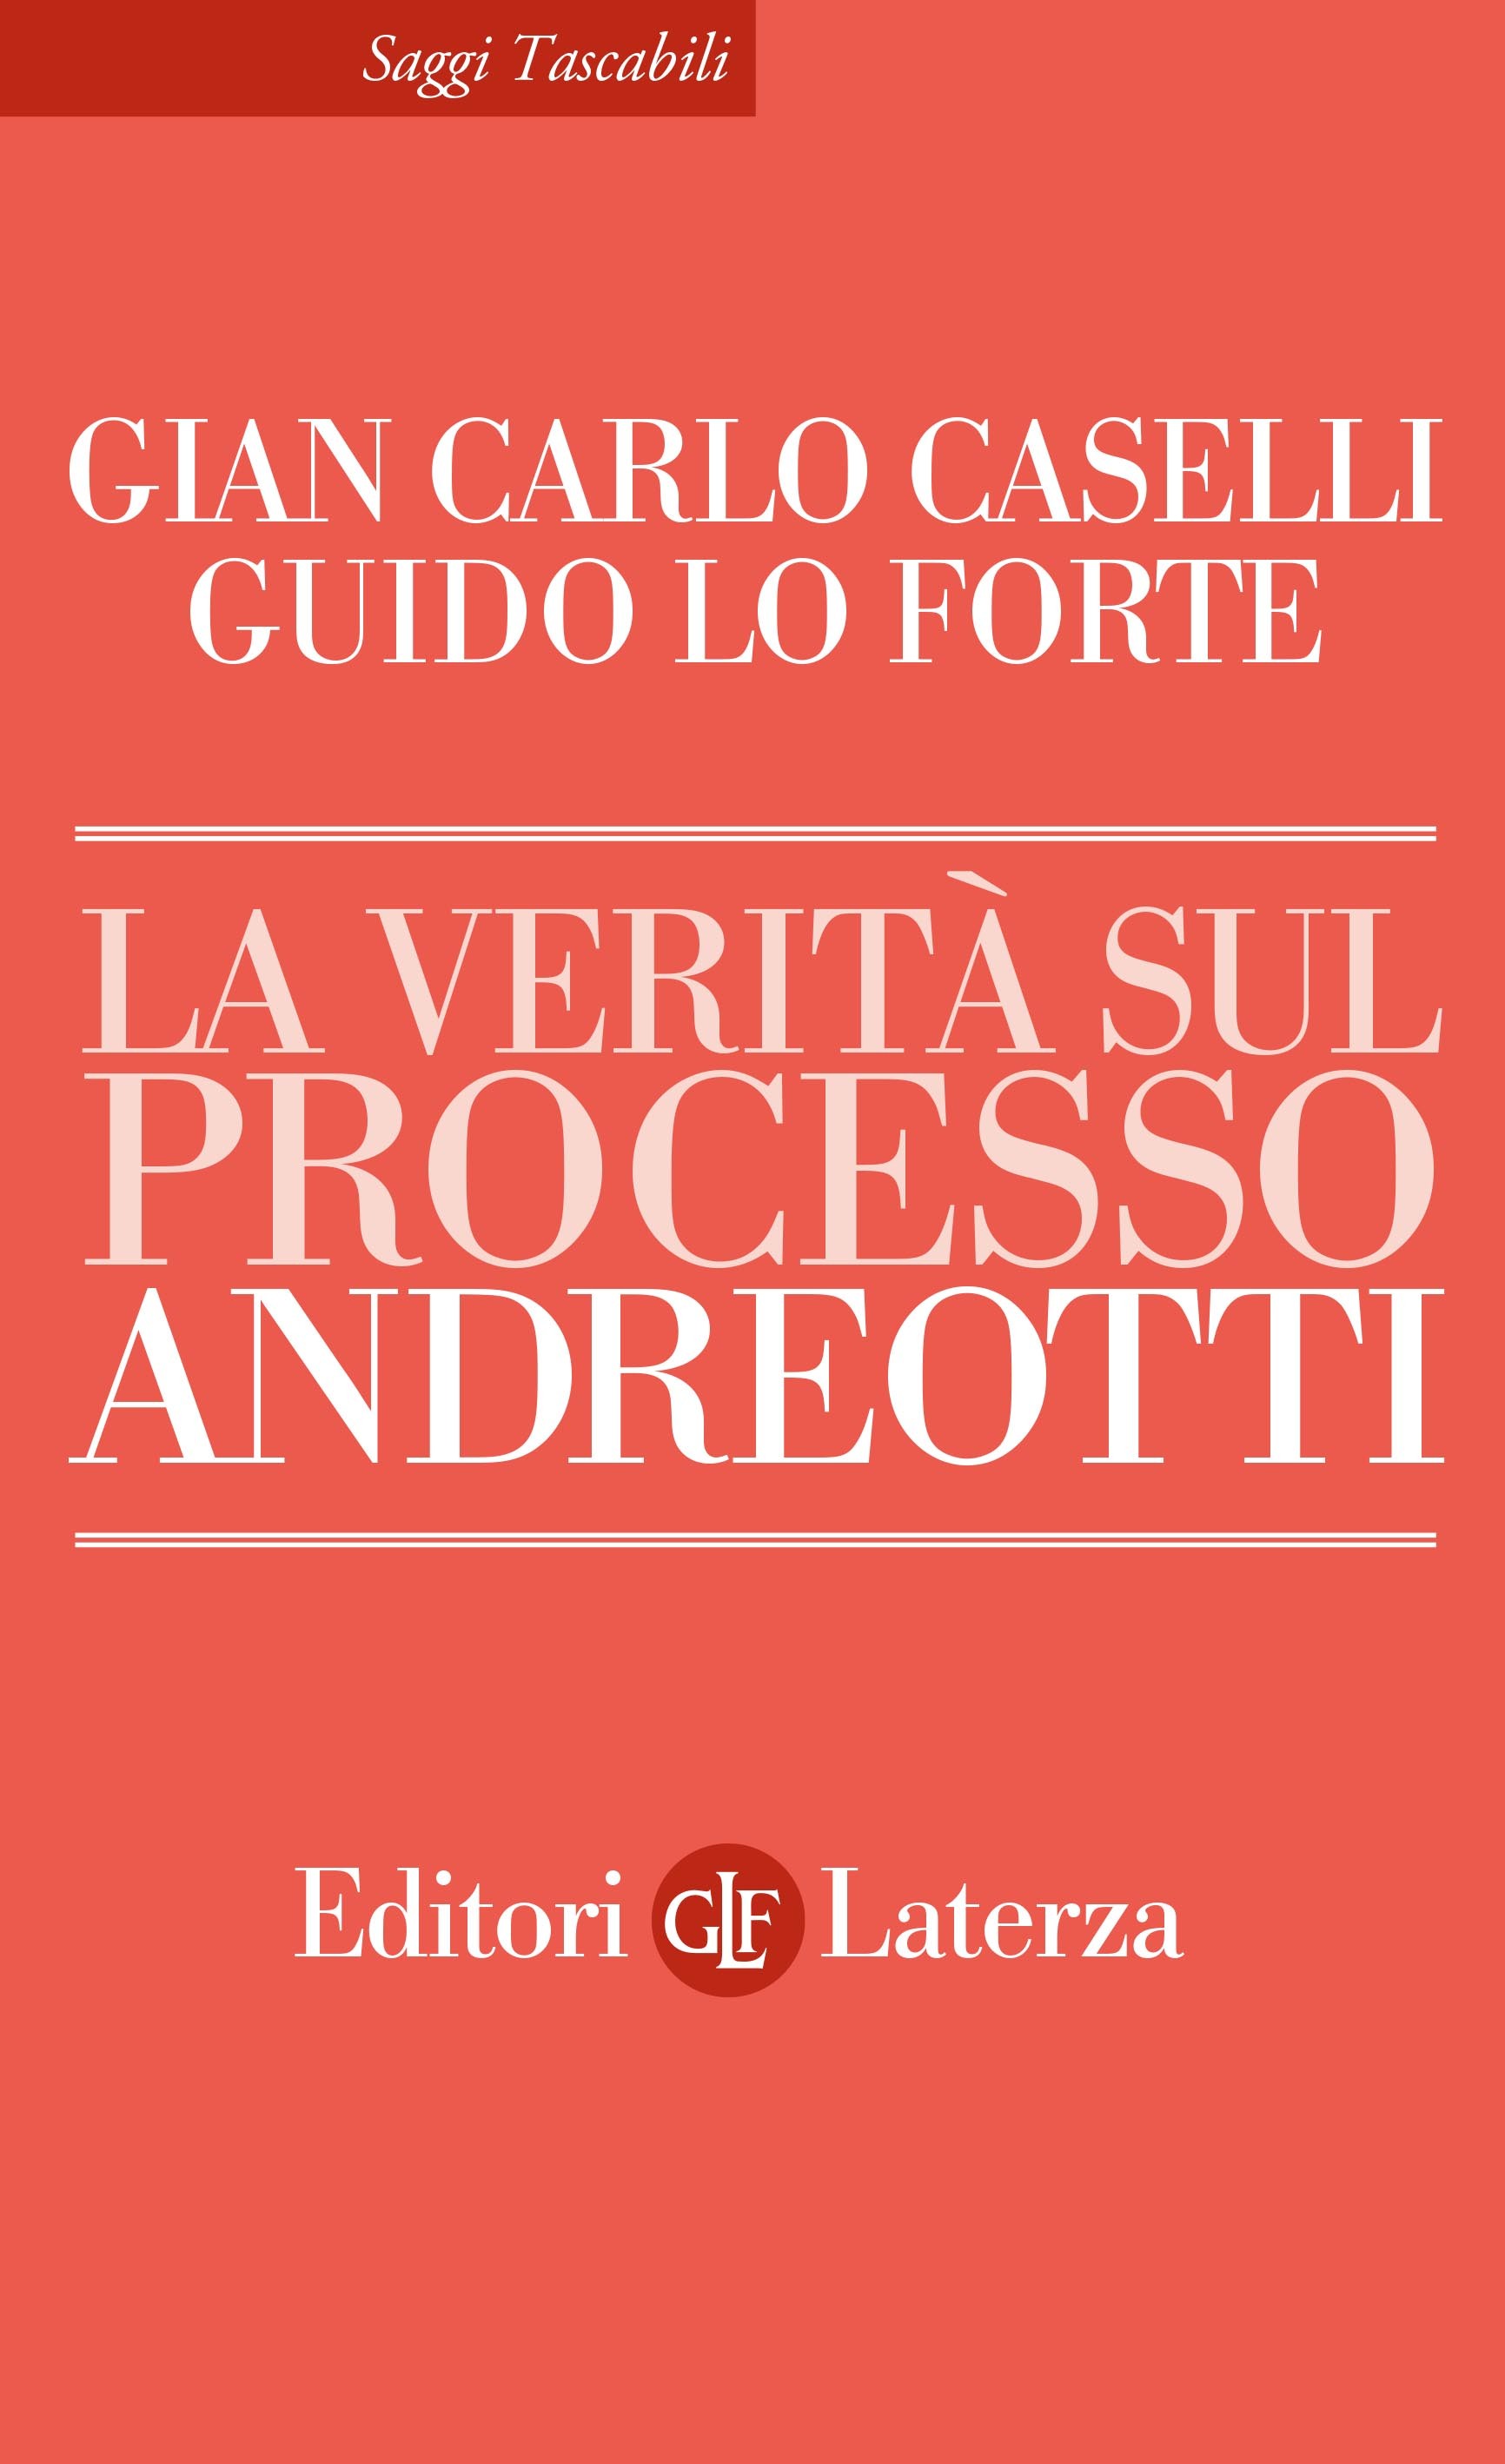 A Palazzo Ceriana Mayneri 23 febbraio presentazione del libro "La verità sul processo Andreotti"